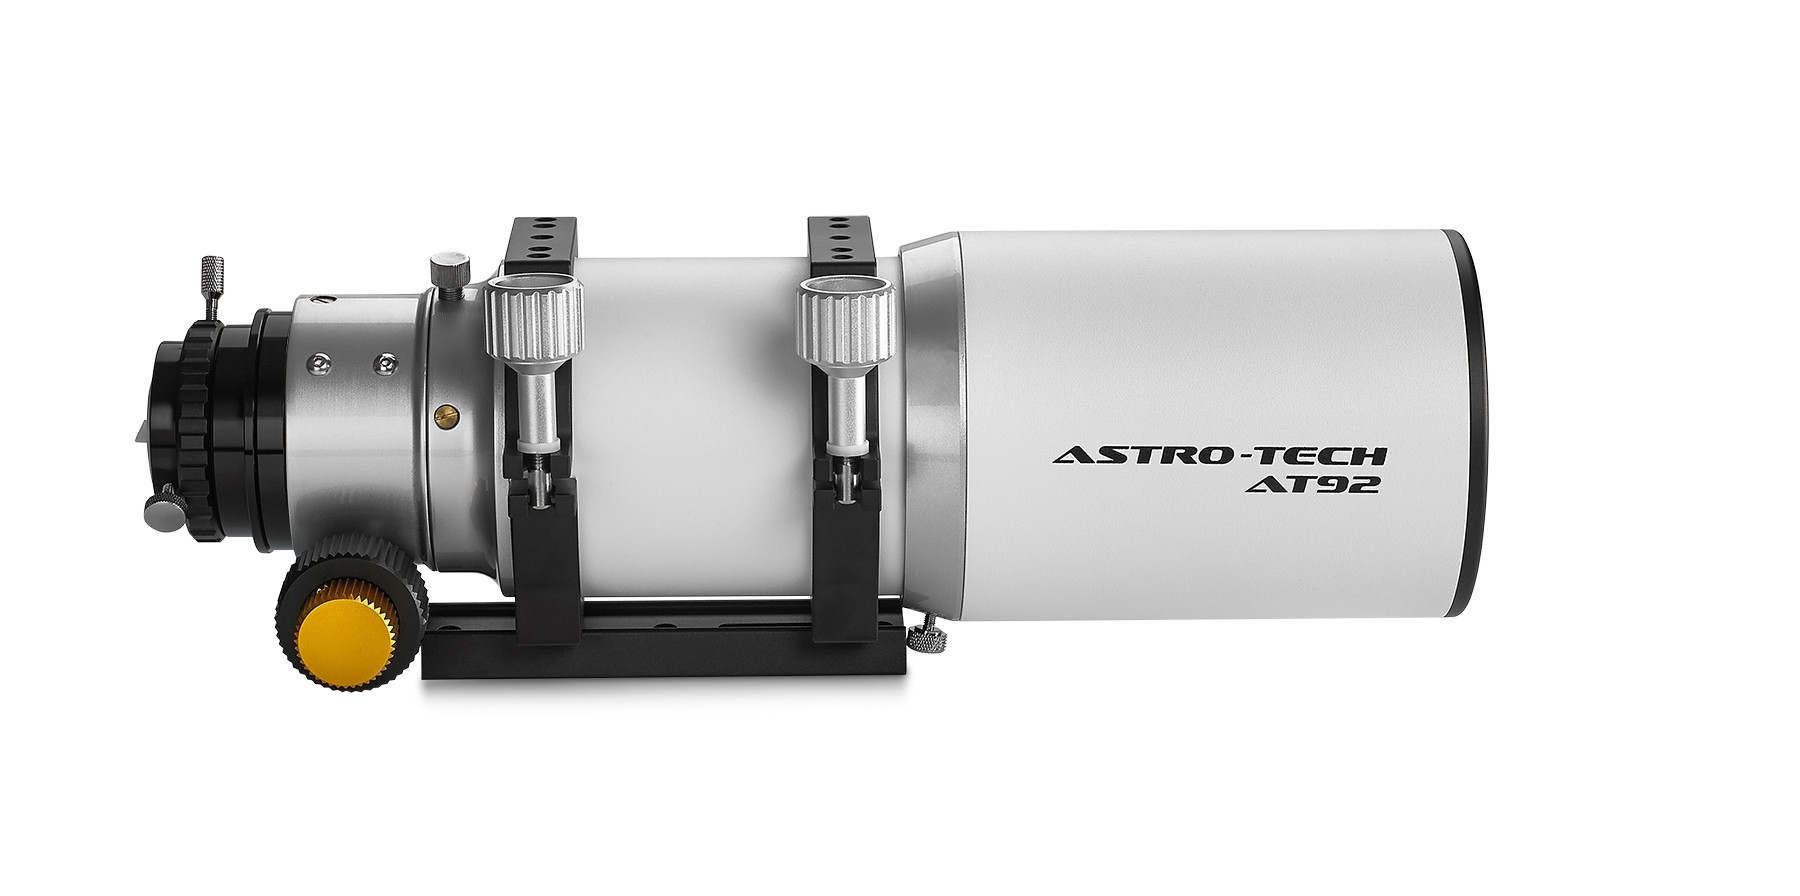 Best Short Tube Apo Telescope